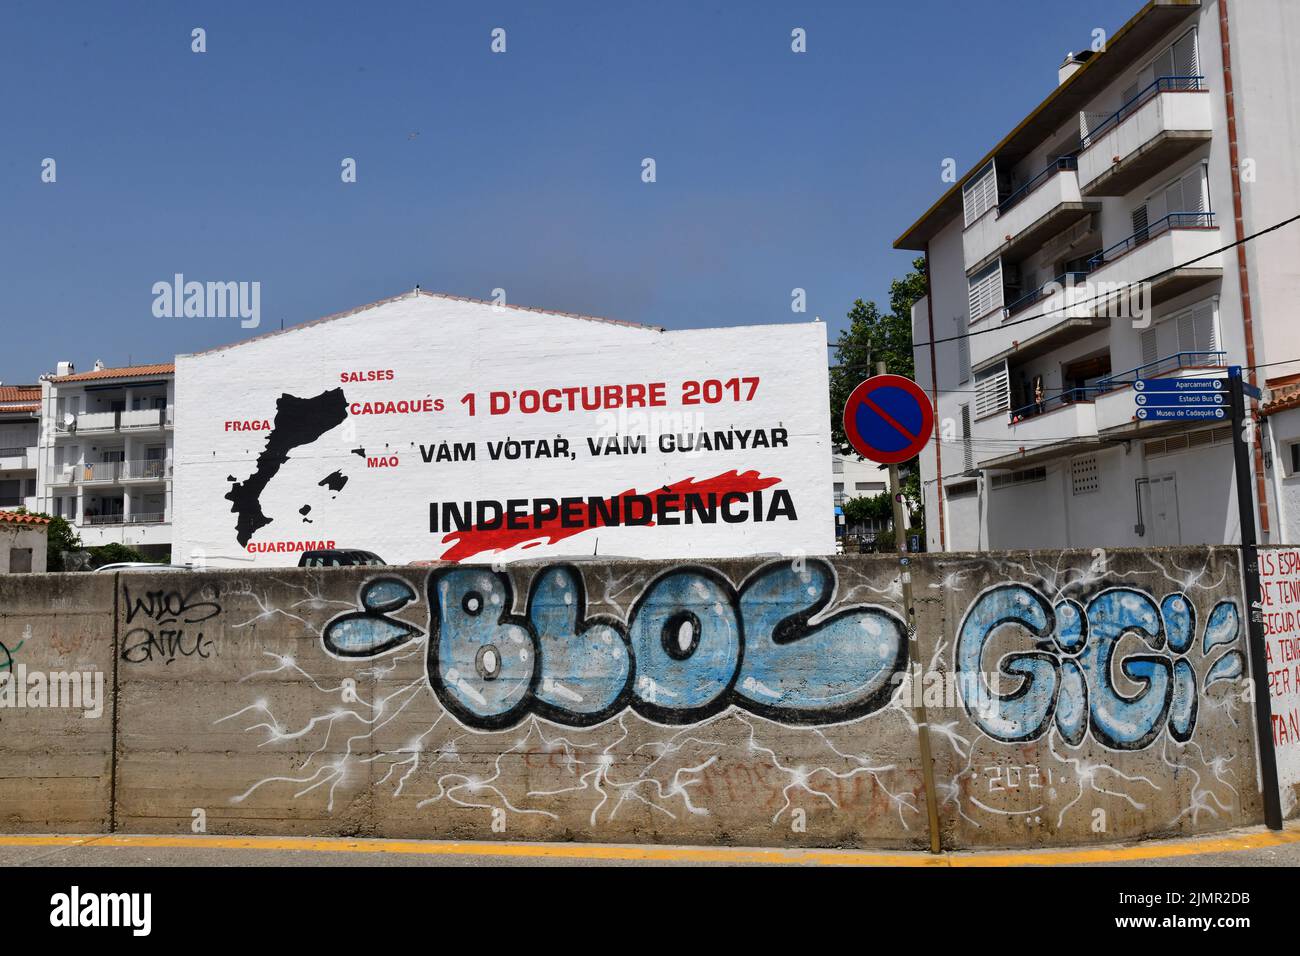 Katalanische Unabhängigkeitsgraffiti an den Straßenmauern in Cadaques, einer spanischen Stadt in der Comarca Alt Empordà, in der Provinz Girona, Katalonien, Spanien. Stockfoto